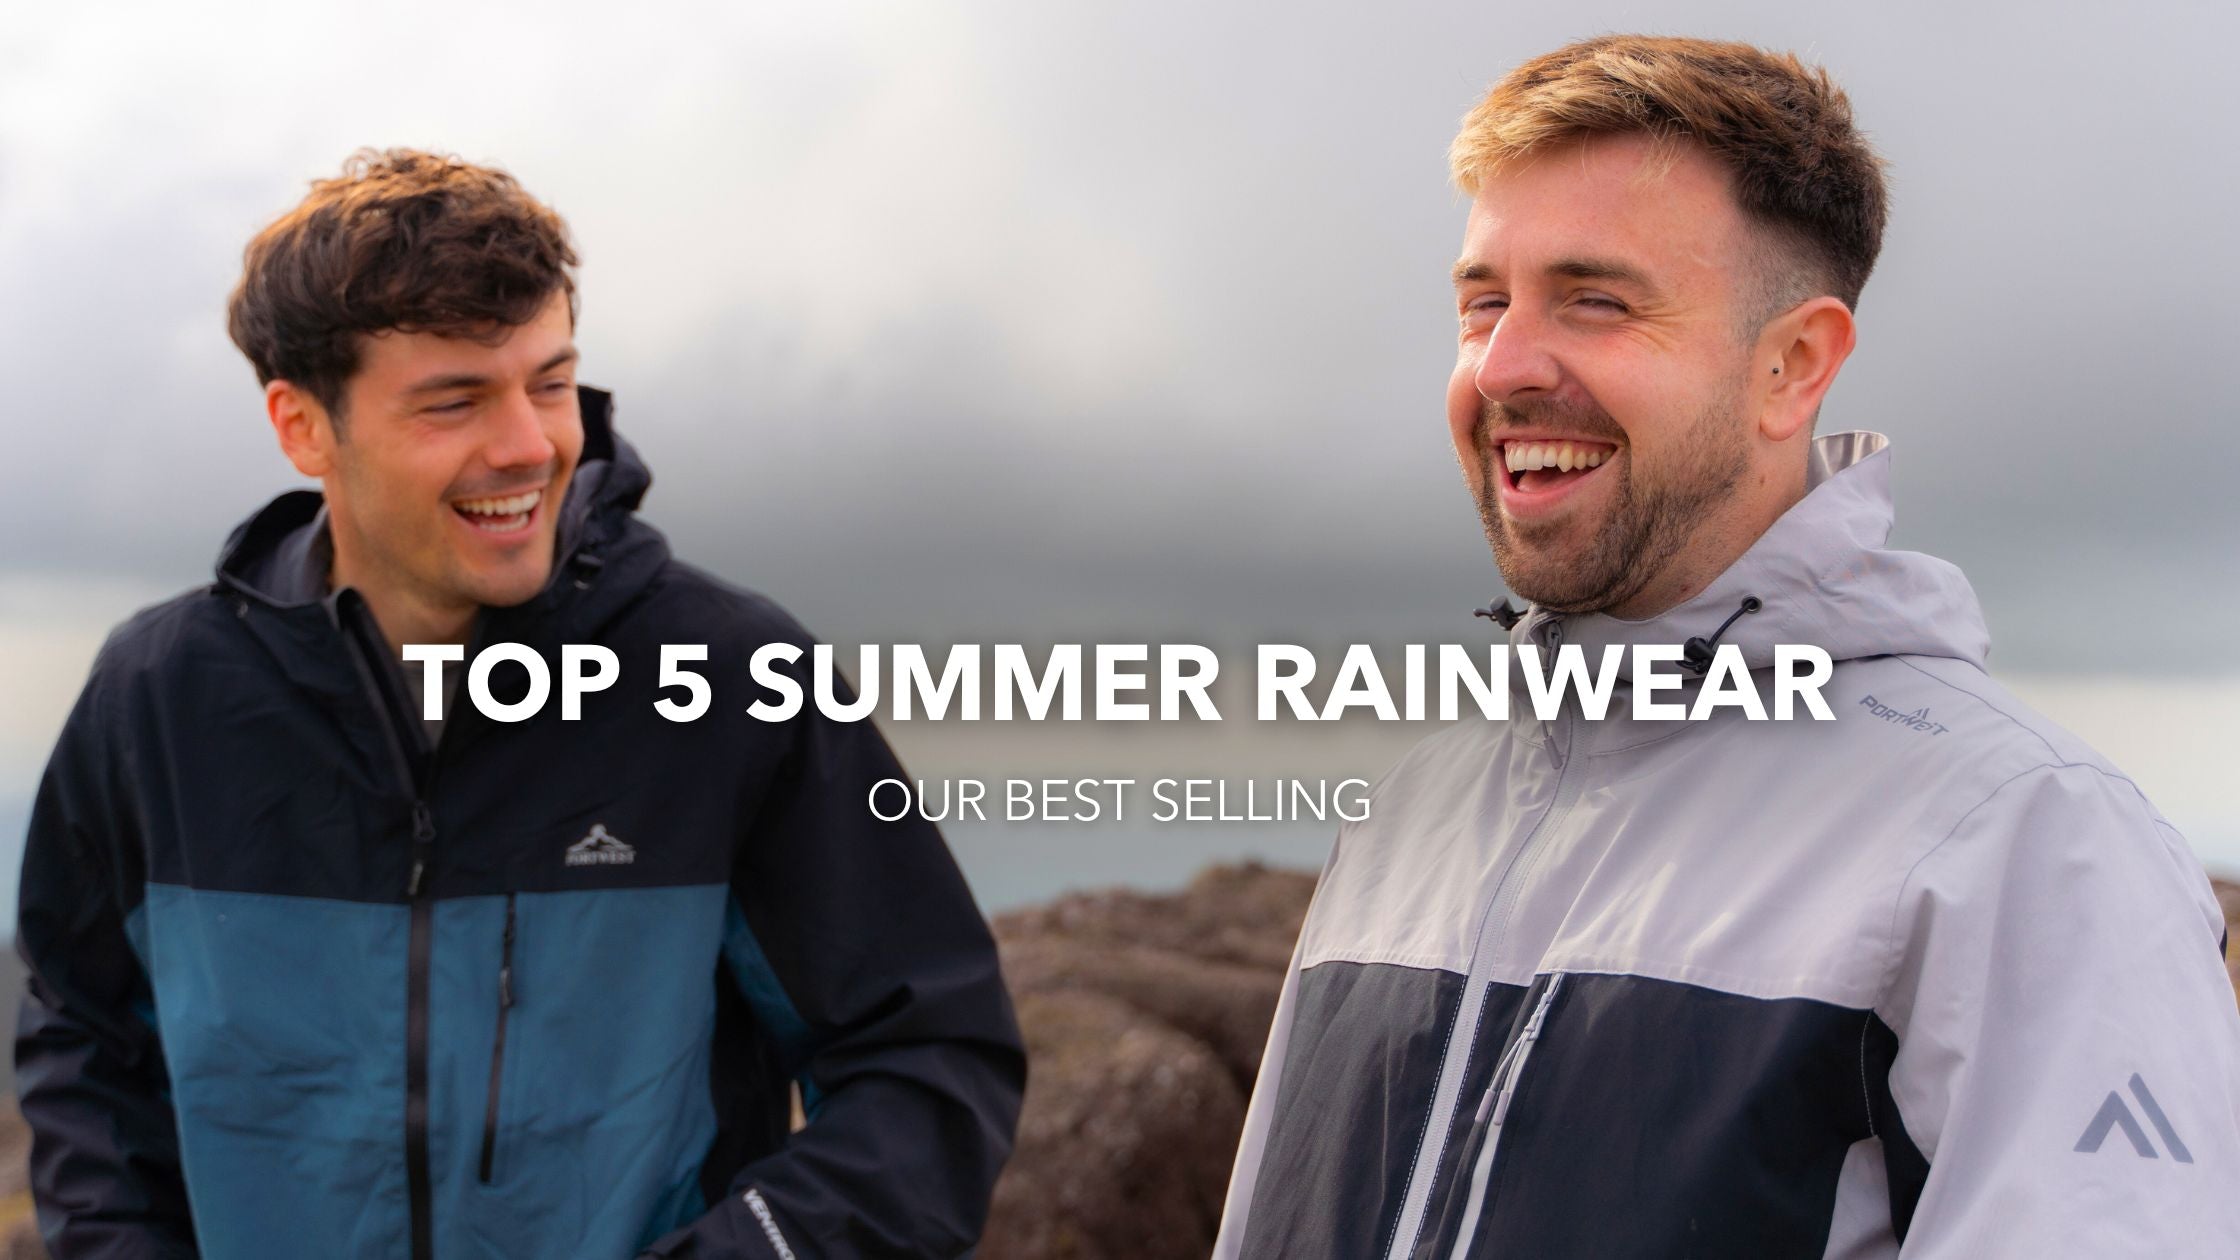 Top 5 Summer Rainwear